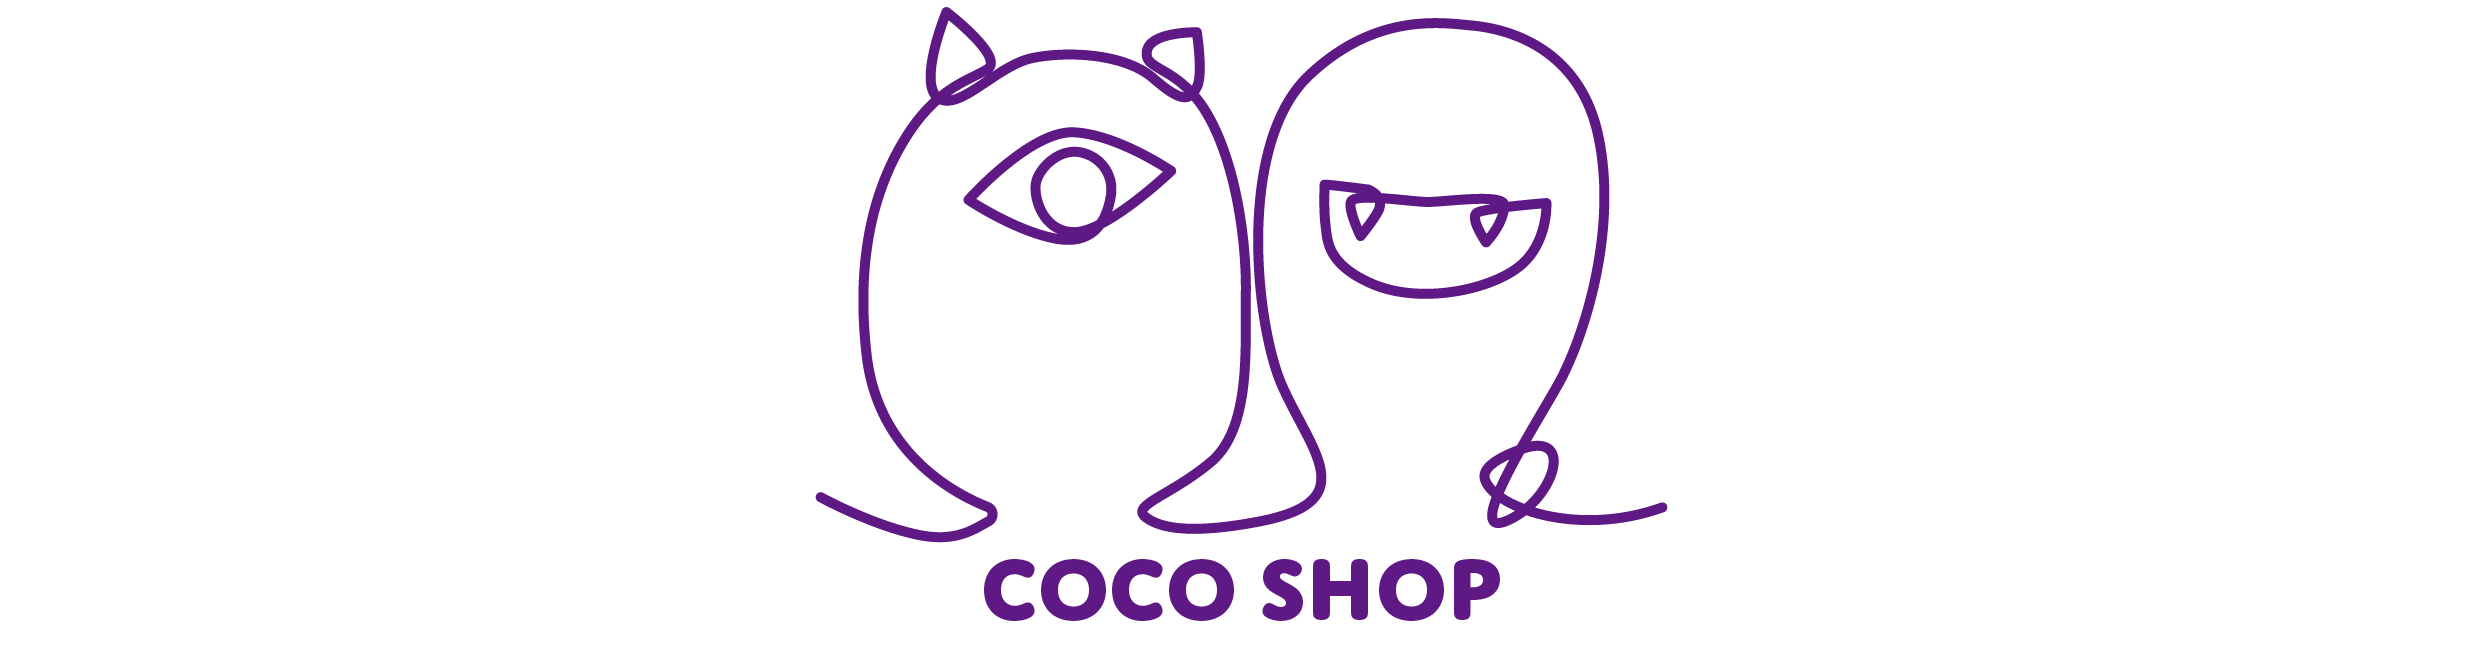 COCO SHOP